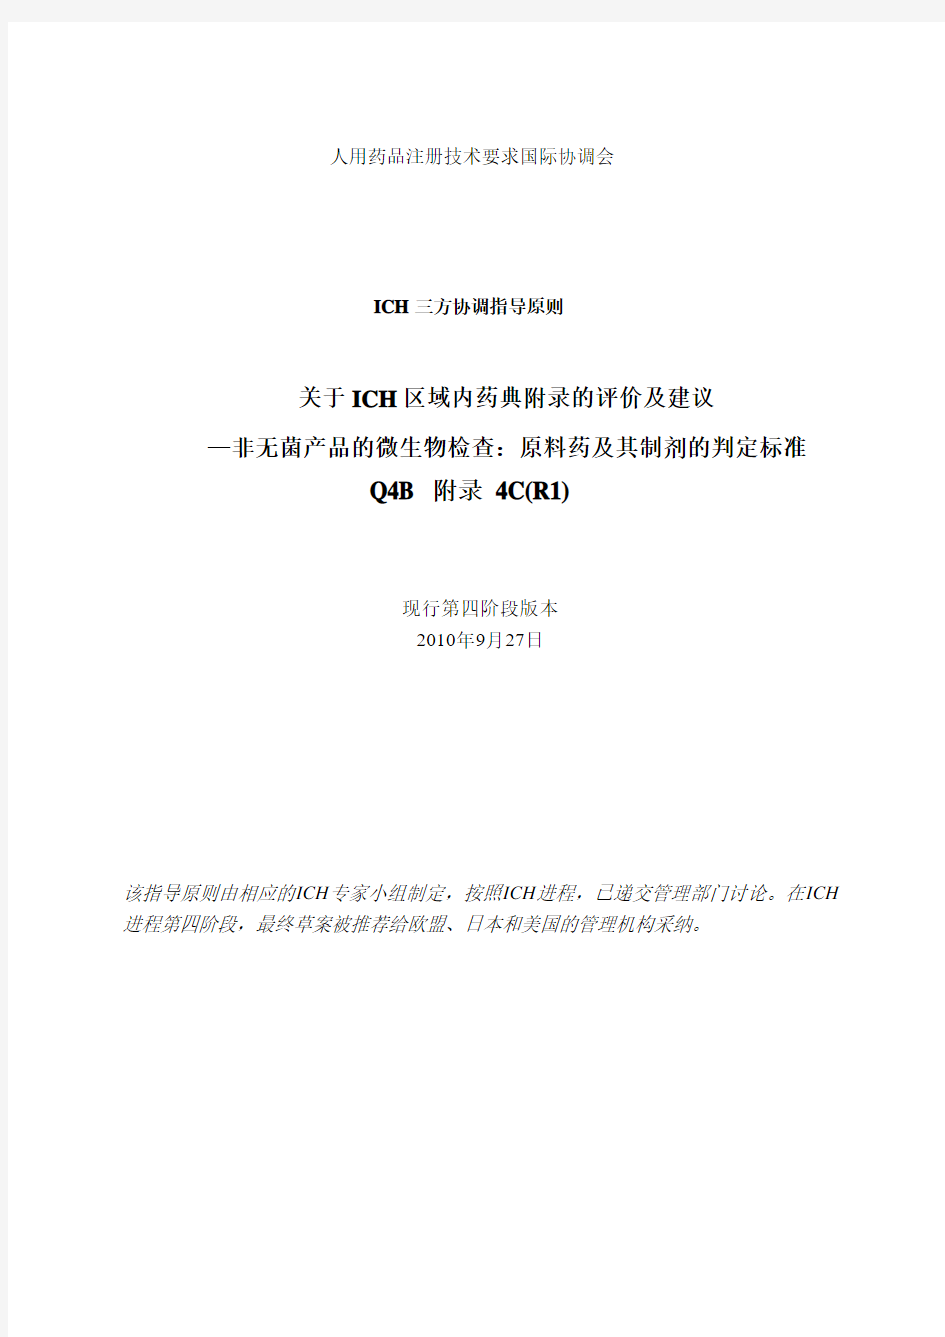 ICH Q4B Annex 4C (R1) 中文版